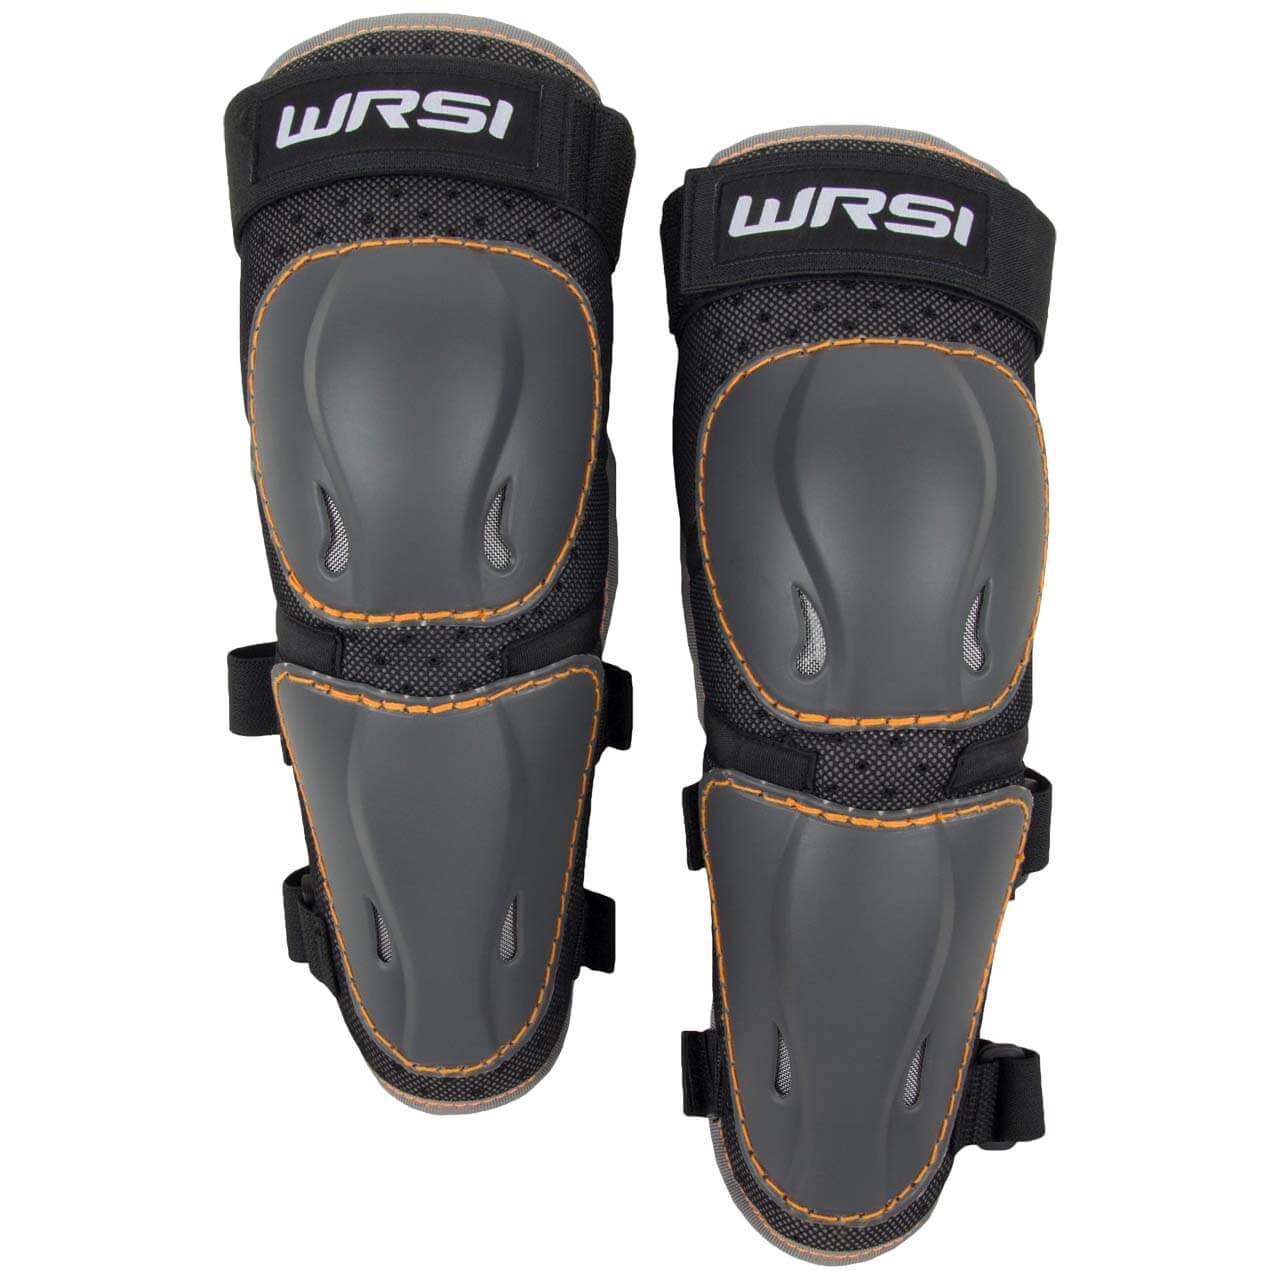 WRSI S-Turn Elbow Pads - L/XL